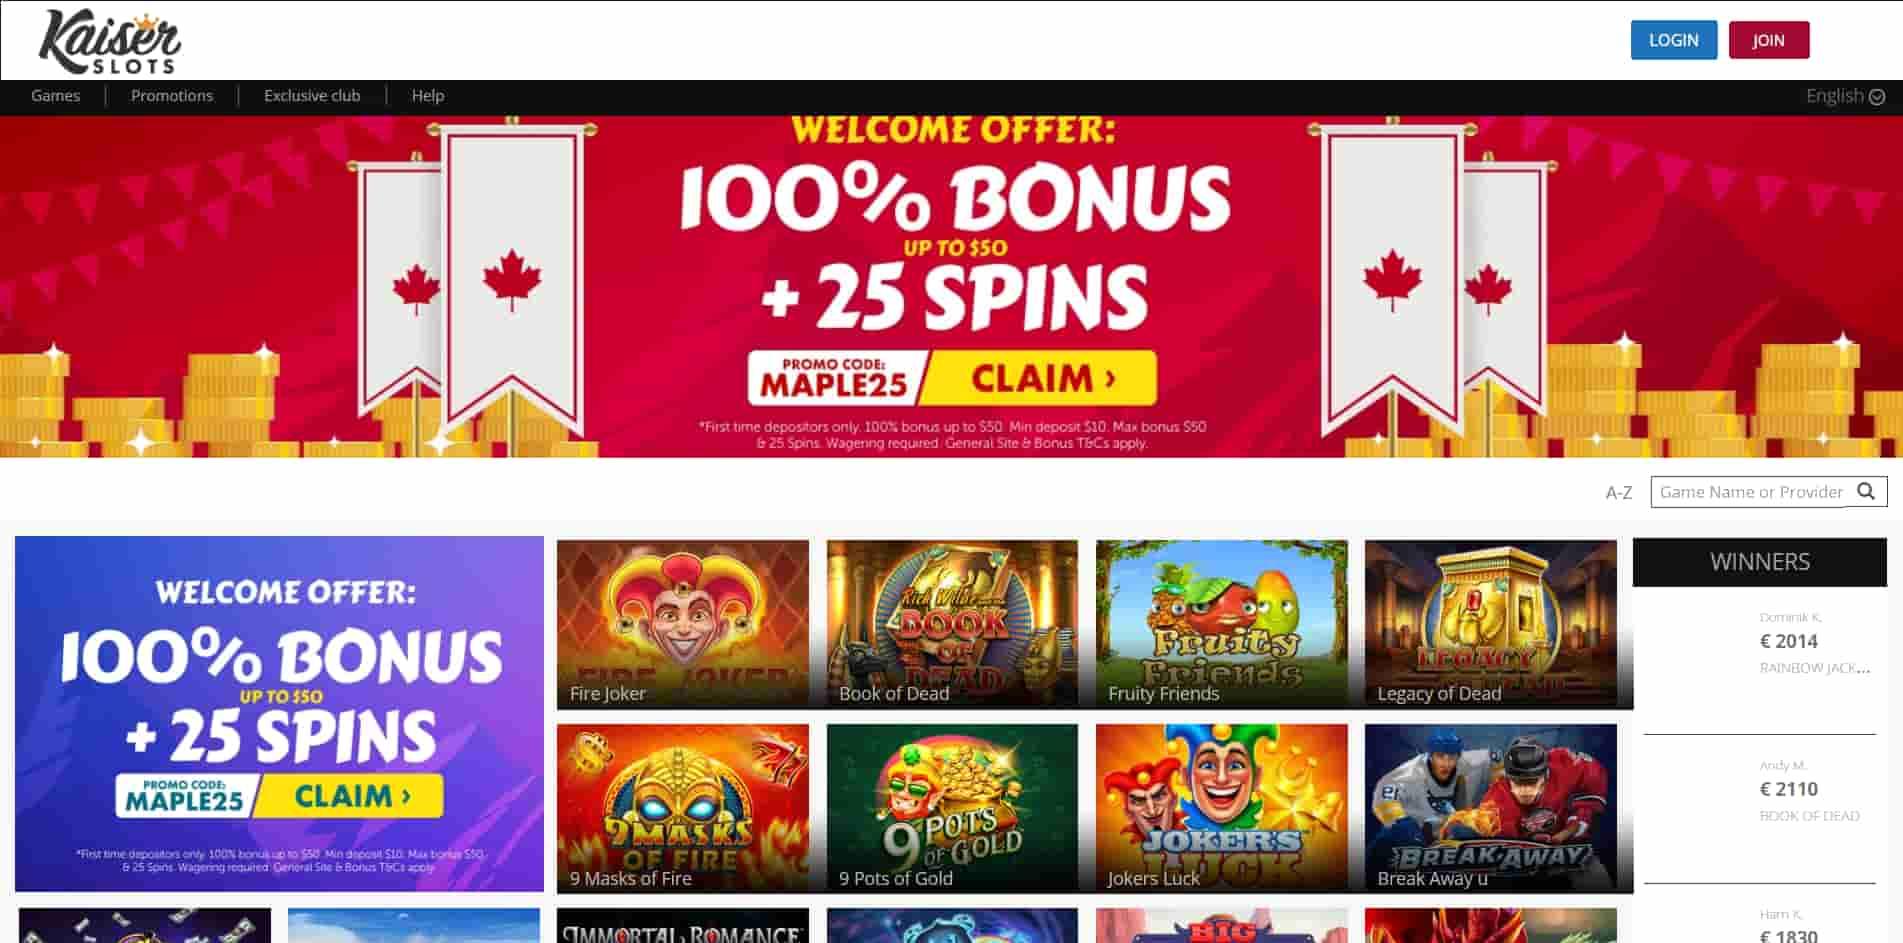 Kaiser Slots casino homepage